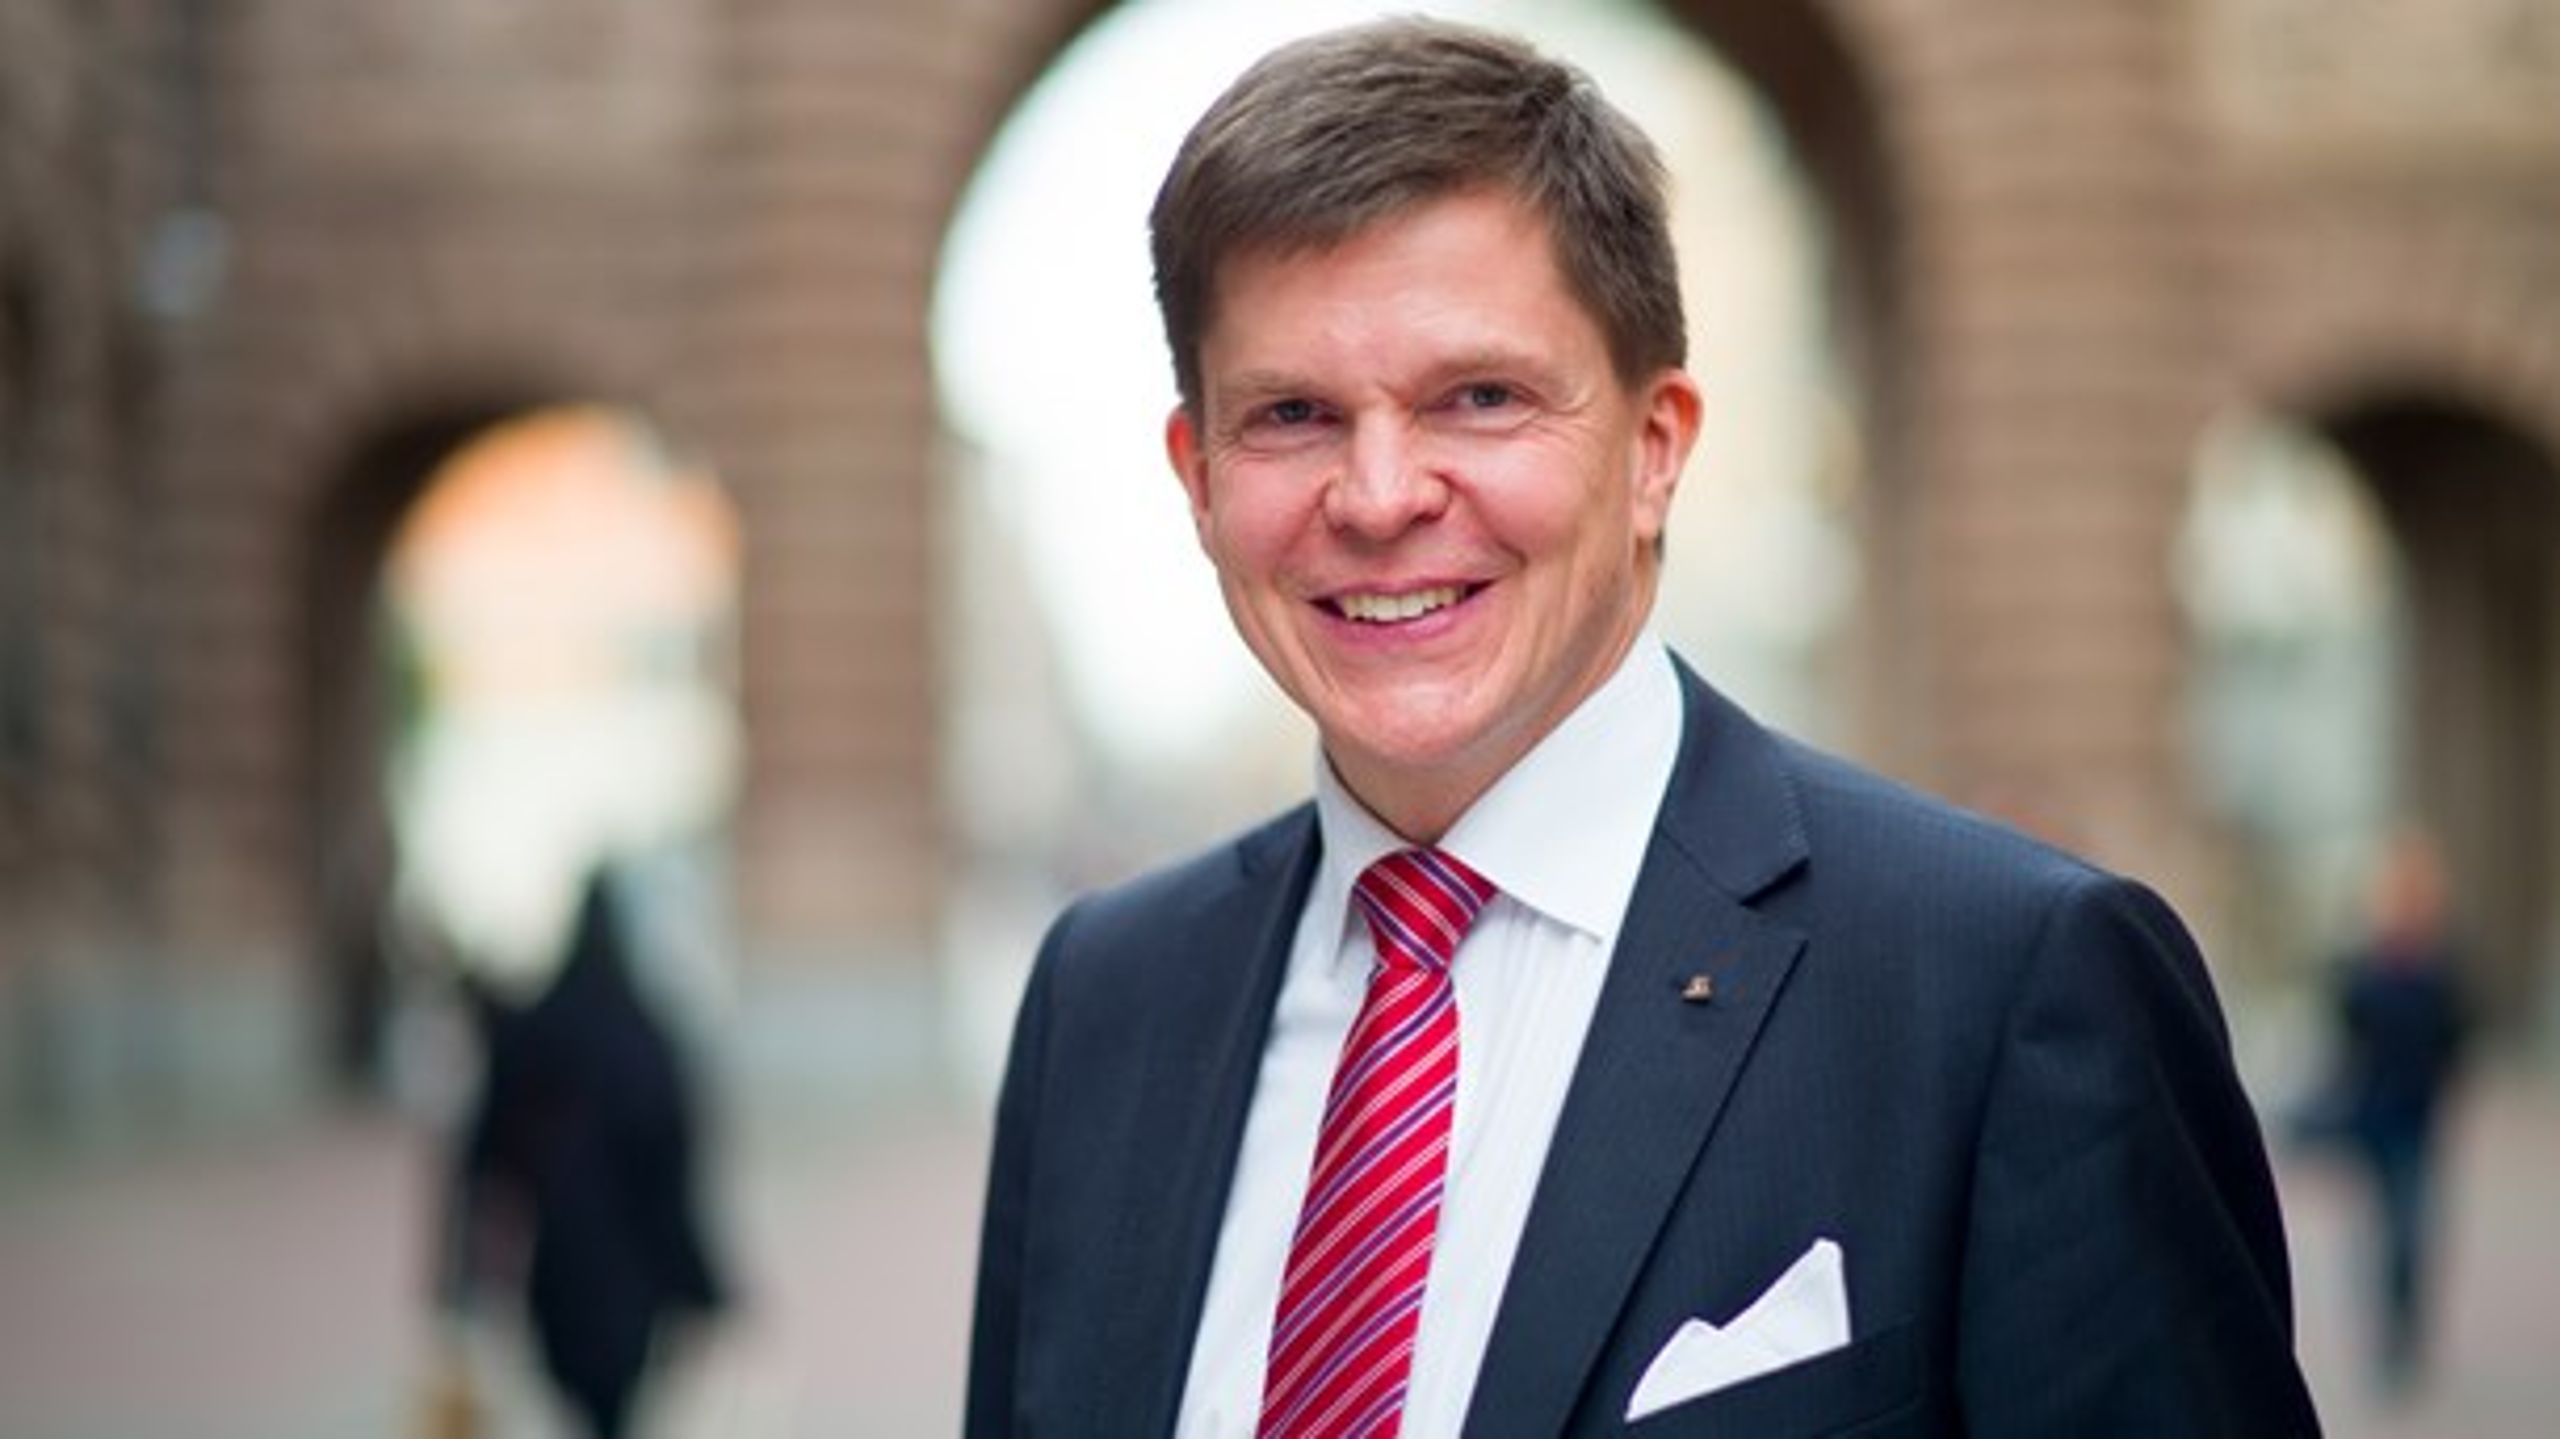 Andreas Norlén är ordförande i KU sedan 2014. Han är nöjd med att KU under hans tid tagit steg från politisering till enighet i sin granskning.